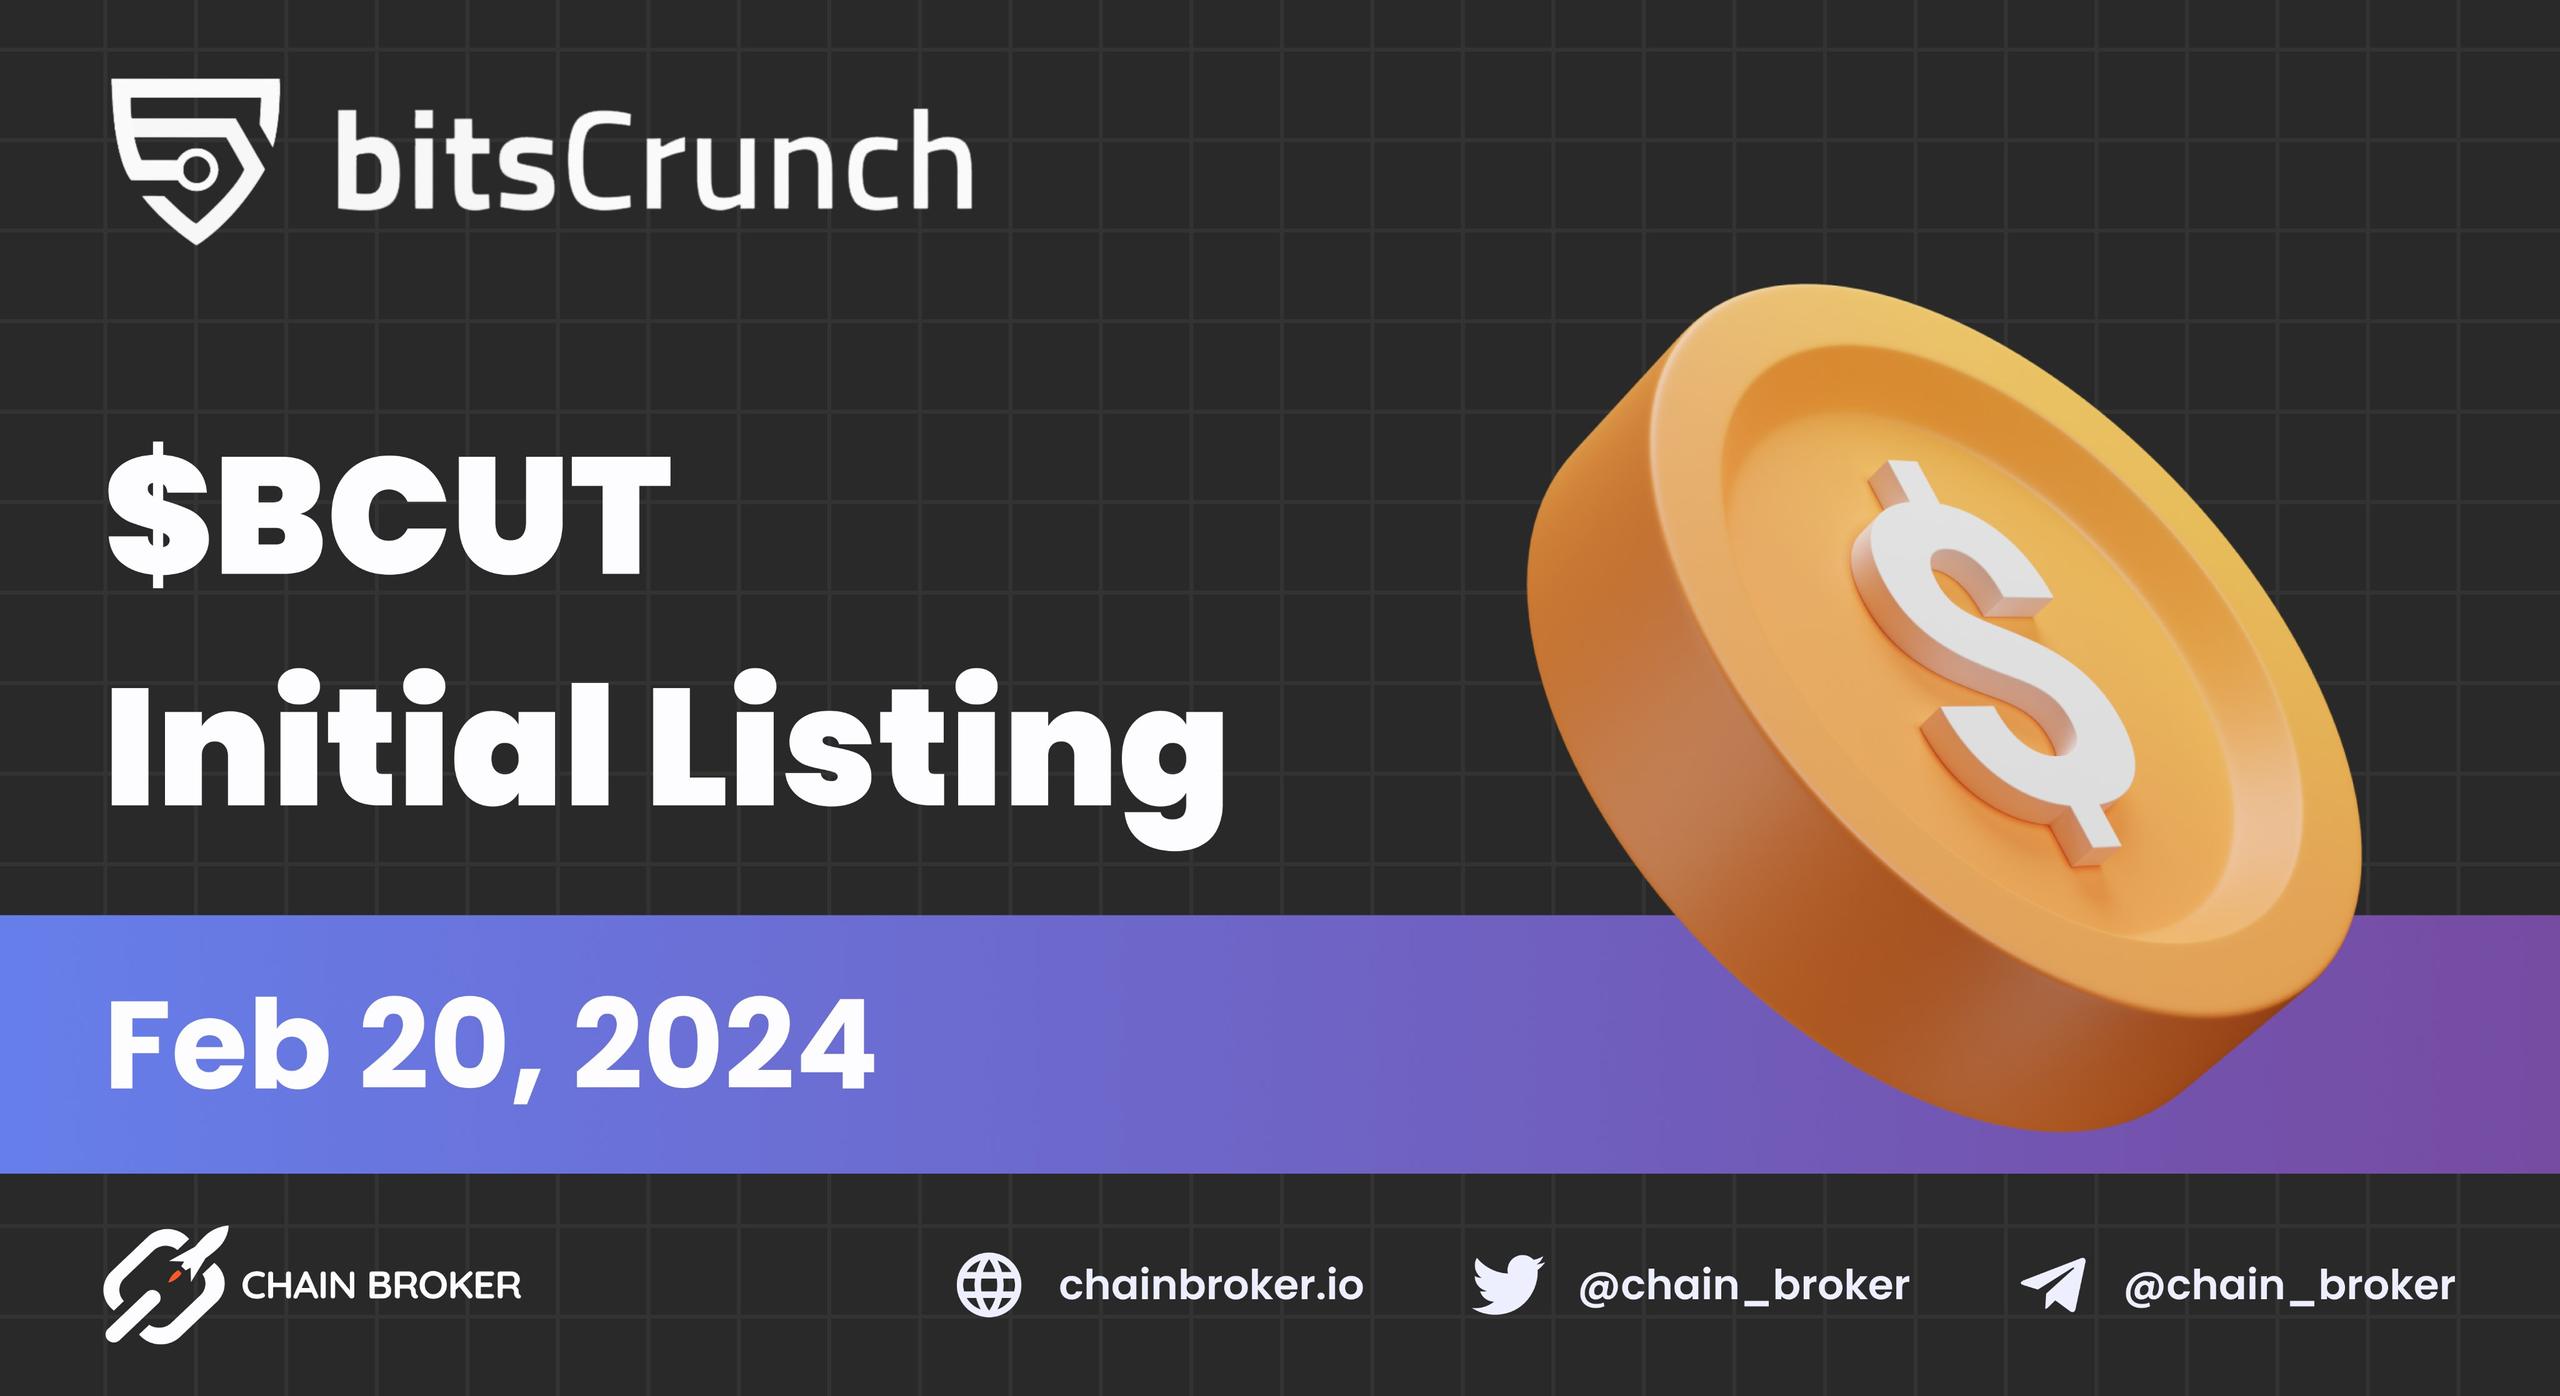 bitsCrunch announces $BCUT listing